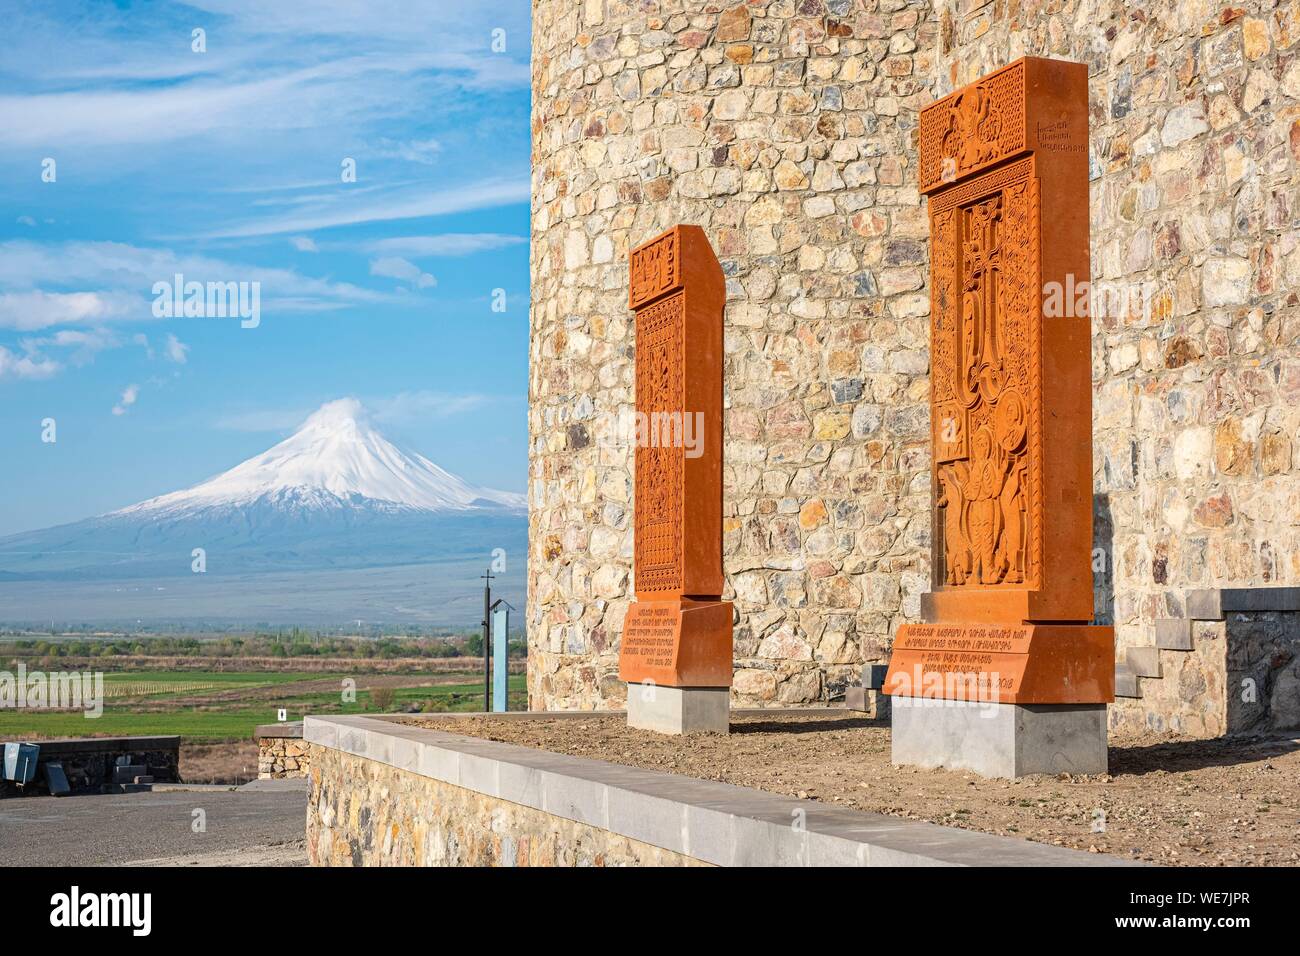 Armenien, Ararat region, Khatchkar (Memorial Stele) in das Kloster Khor Virap und den Berg Ararat Stockfoto